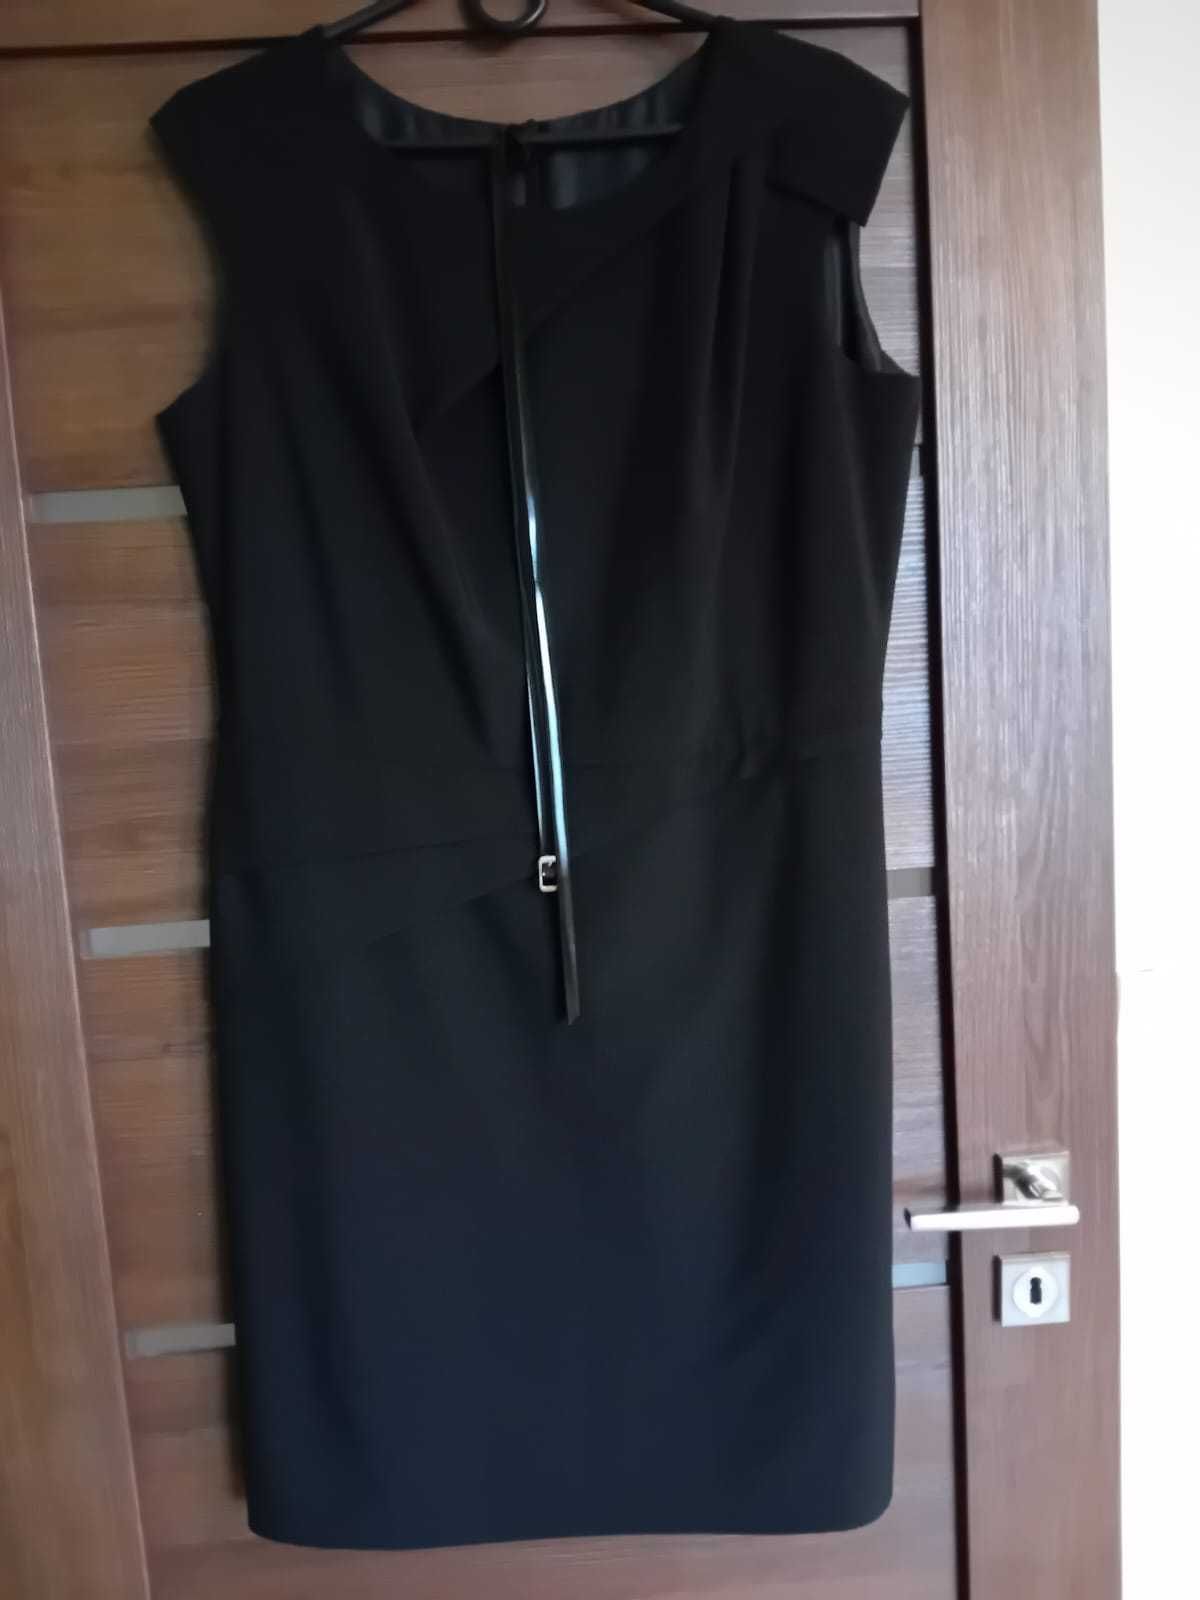 Czarna sukienka, elegancka rozmiar 44